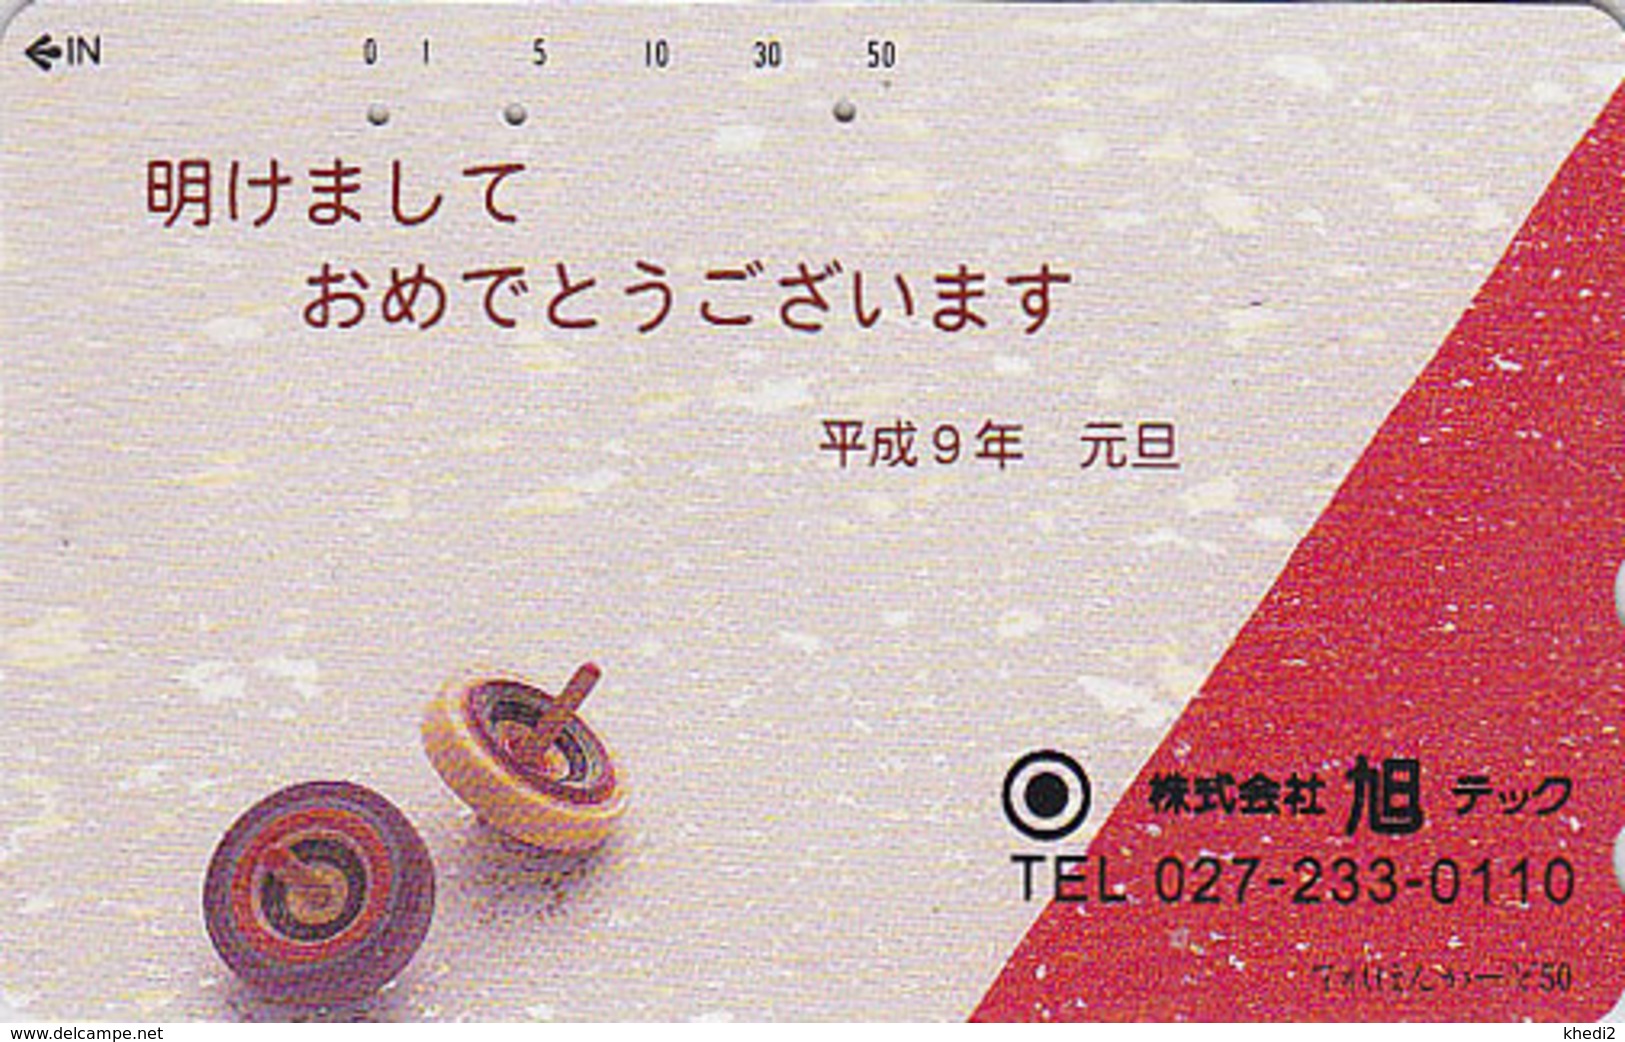 Télécarte Japon / 110-636  - Jeu Jouet TOUPIE - SPINTOP TOP Toy  Japan Phonecard - KREISEL Telefonkarte - MD 30 - Jeux